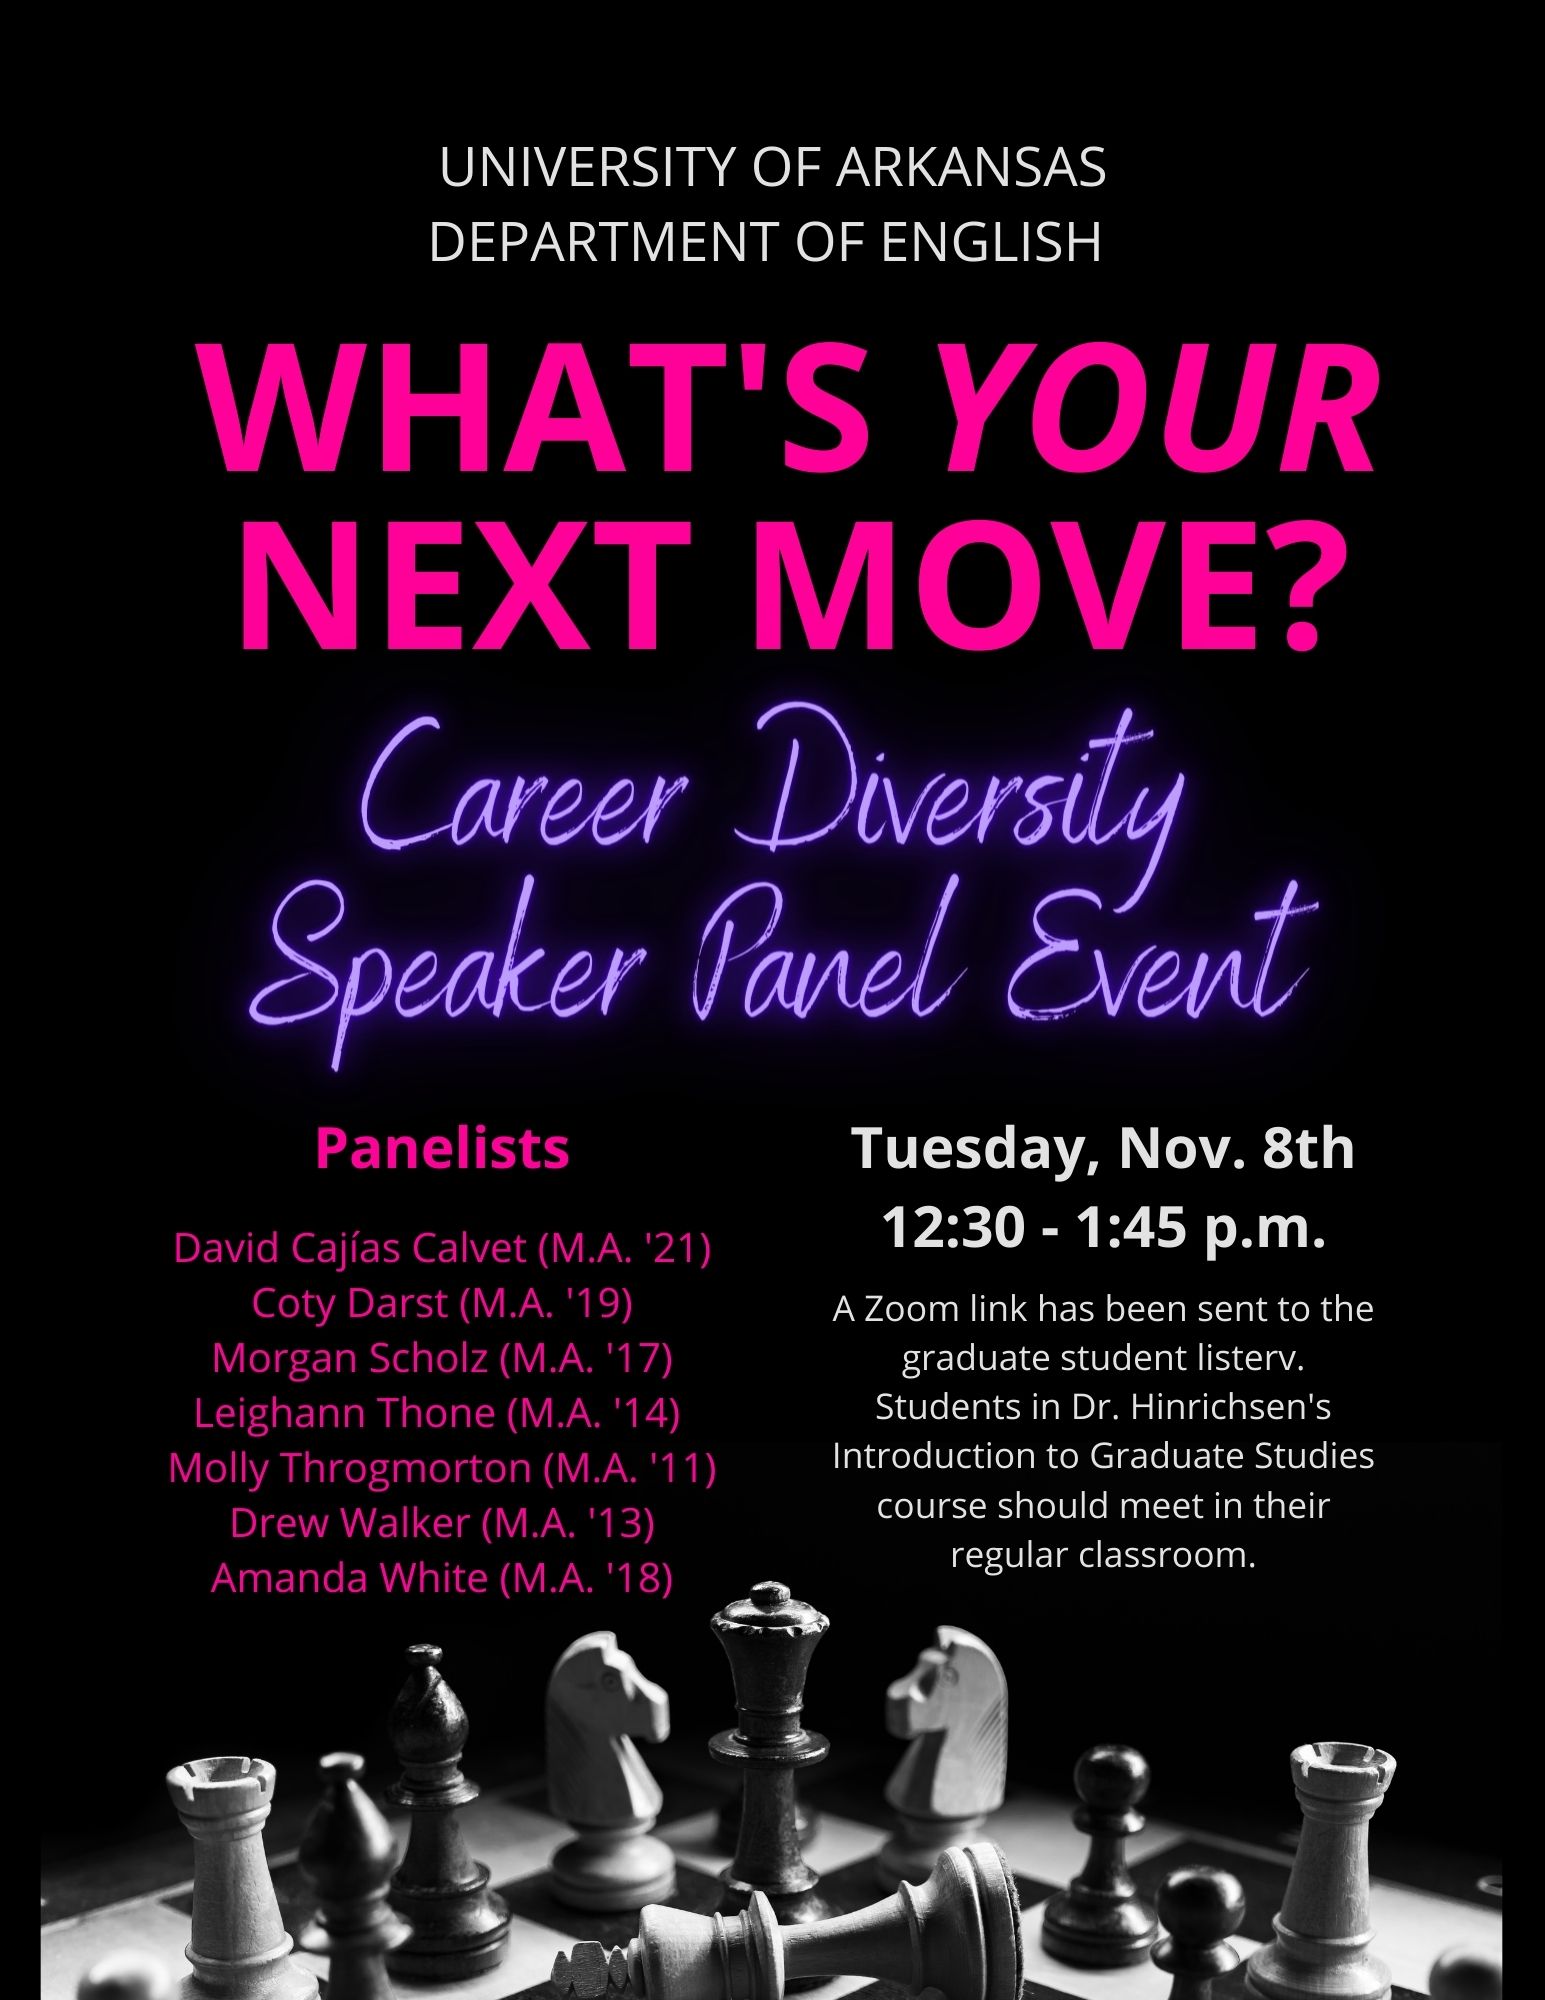 Career Diversity Speaker Panel